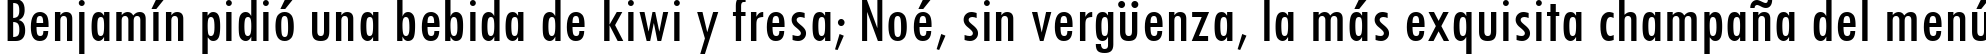 Пример написания шрифтом Tw Cen MT Condensed текста на испанском